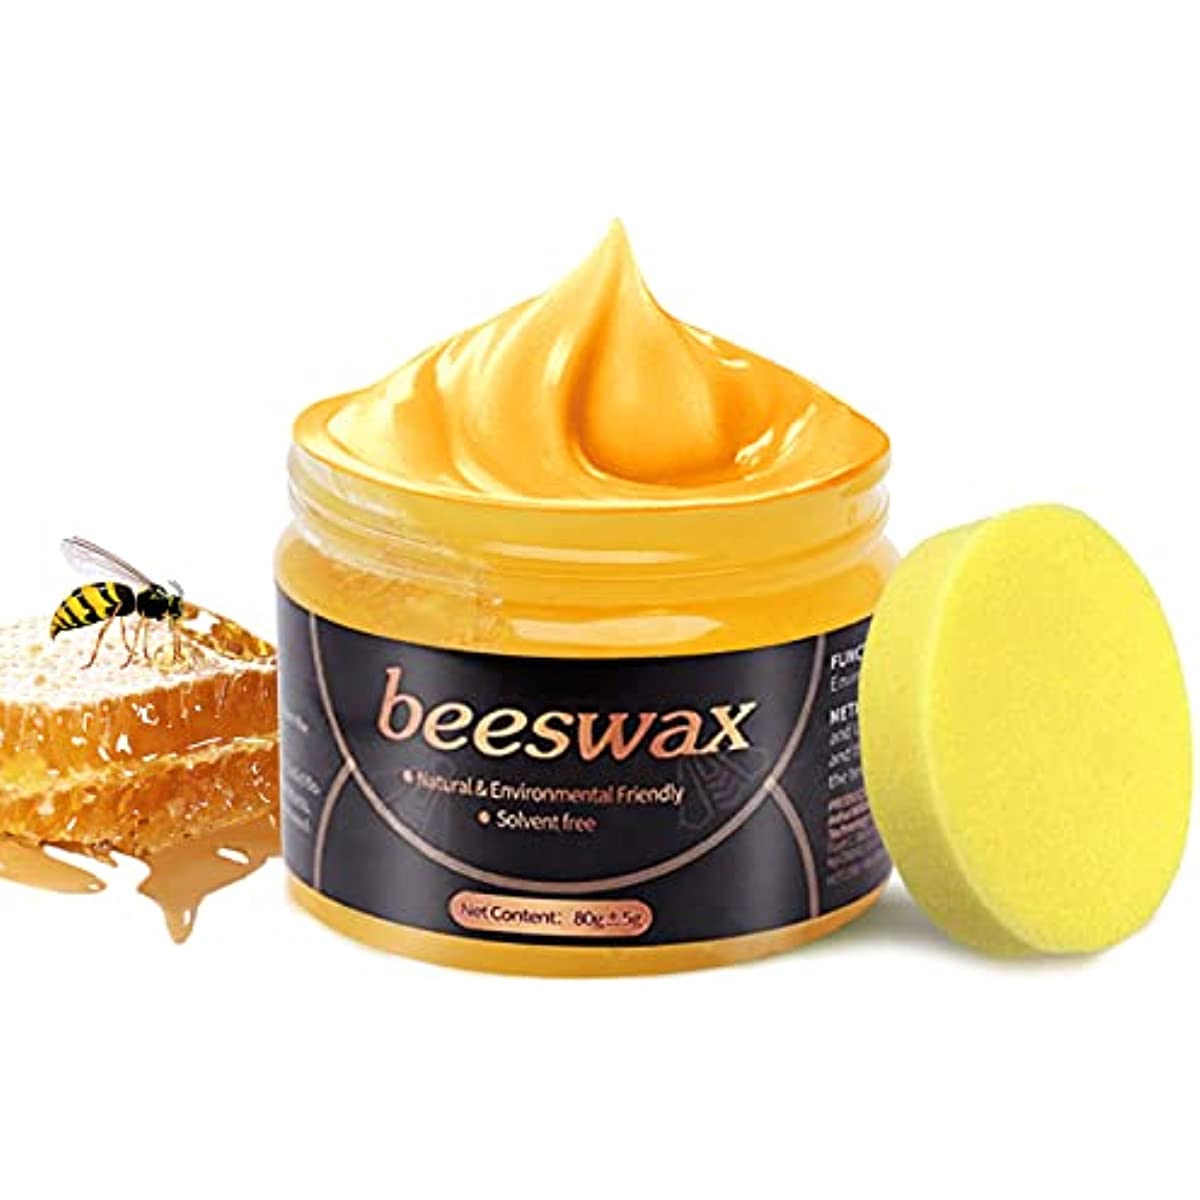 80g Beewax polaco crema miel cera jabón proteger muebles de madera